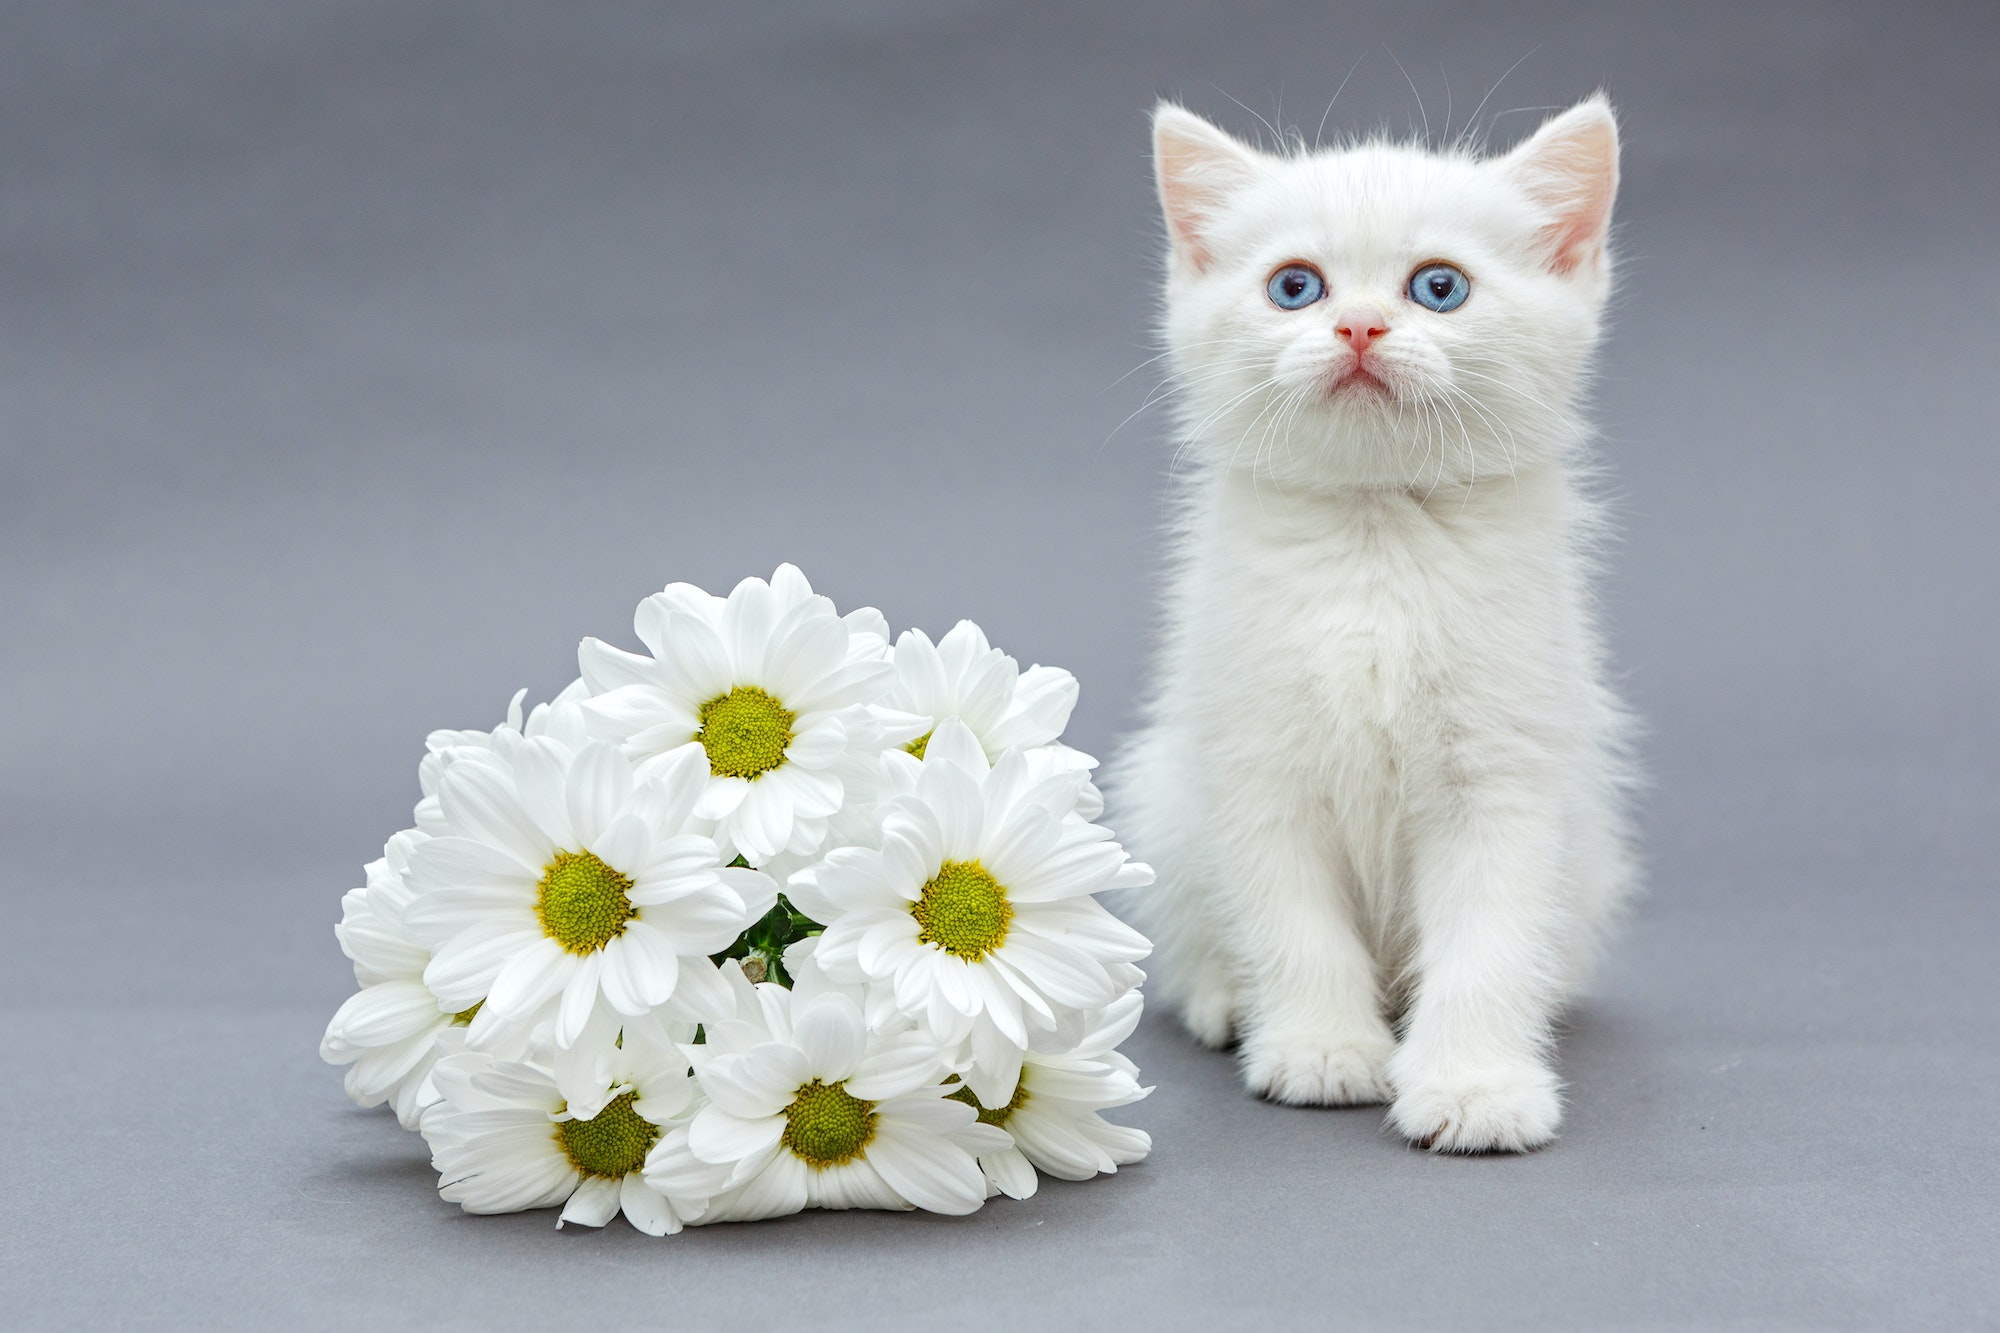 White British kitten and daisies